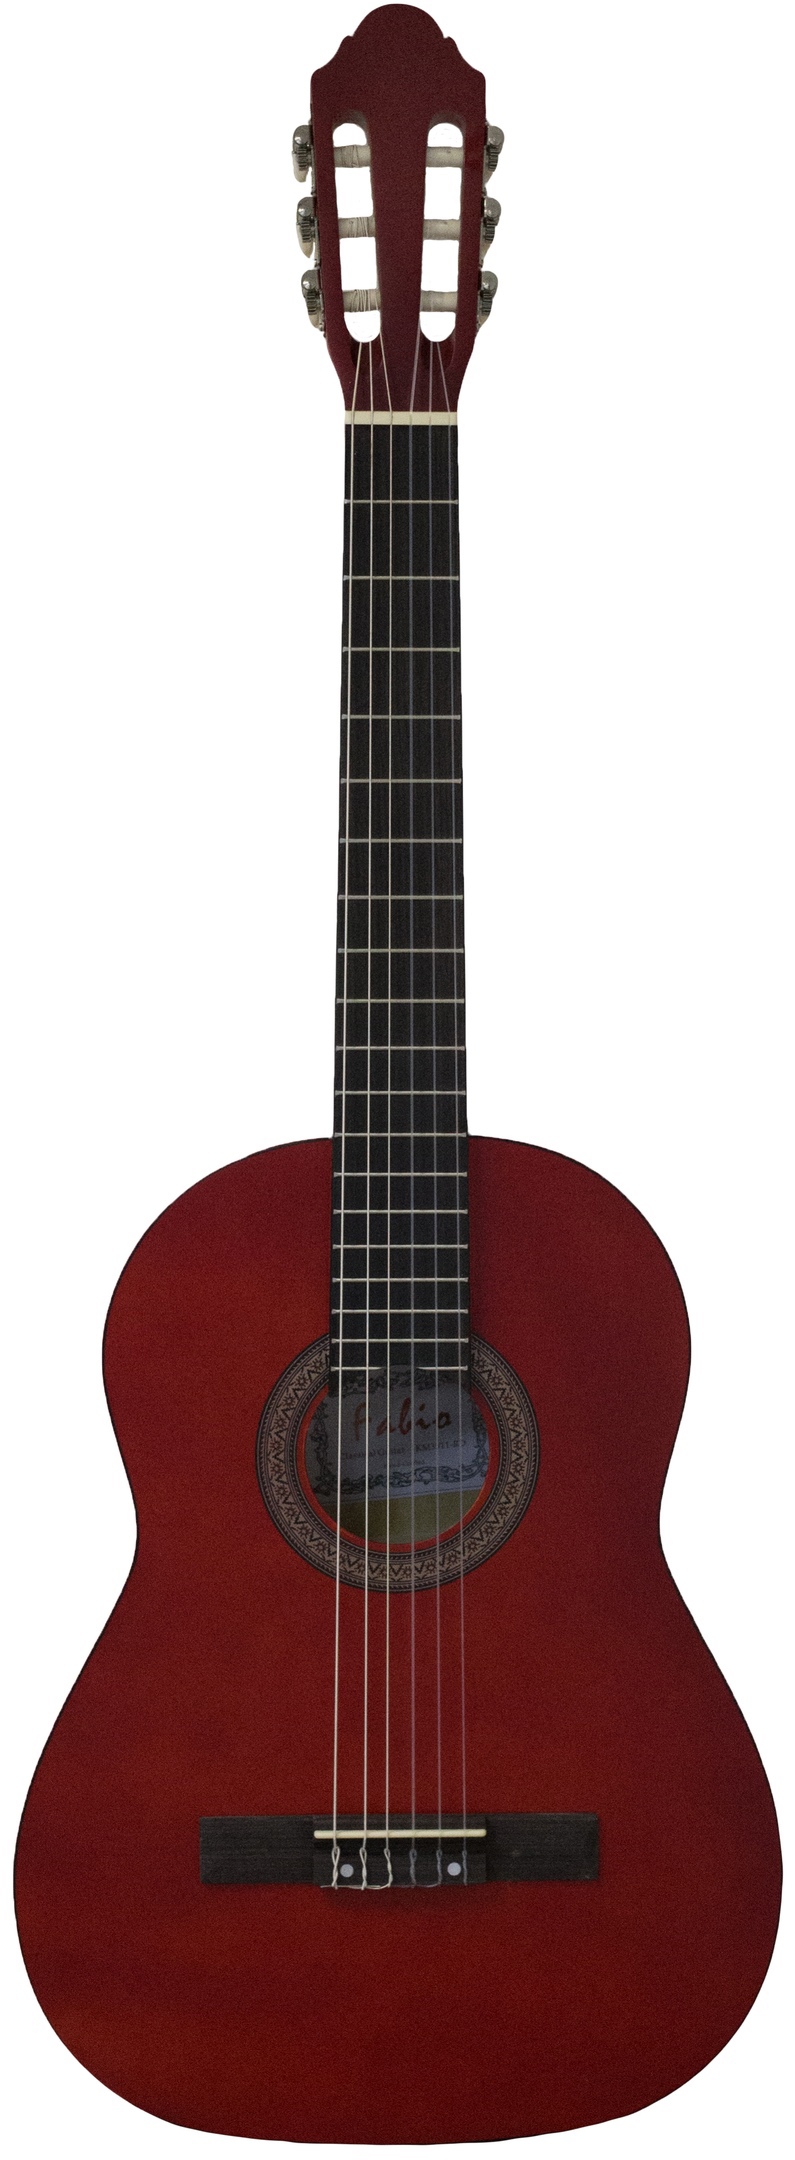 фото Классическая гитара с анкером,матовая,красная.липа 4/4 (39 дюйм) fabio км3911 rd